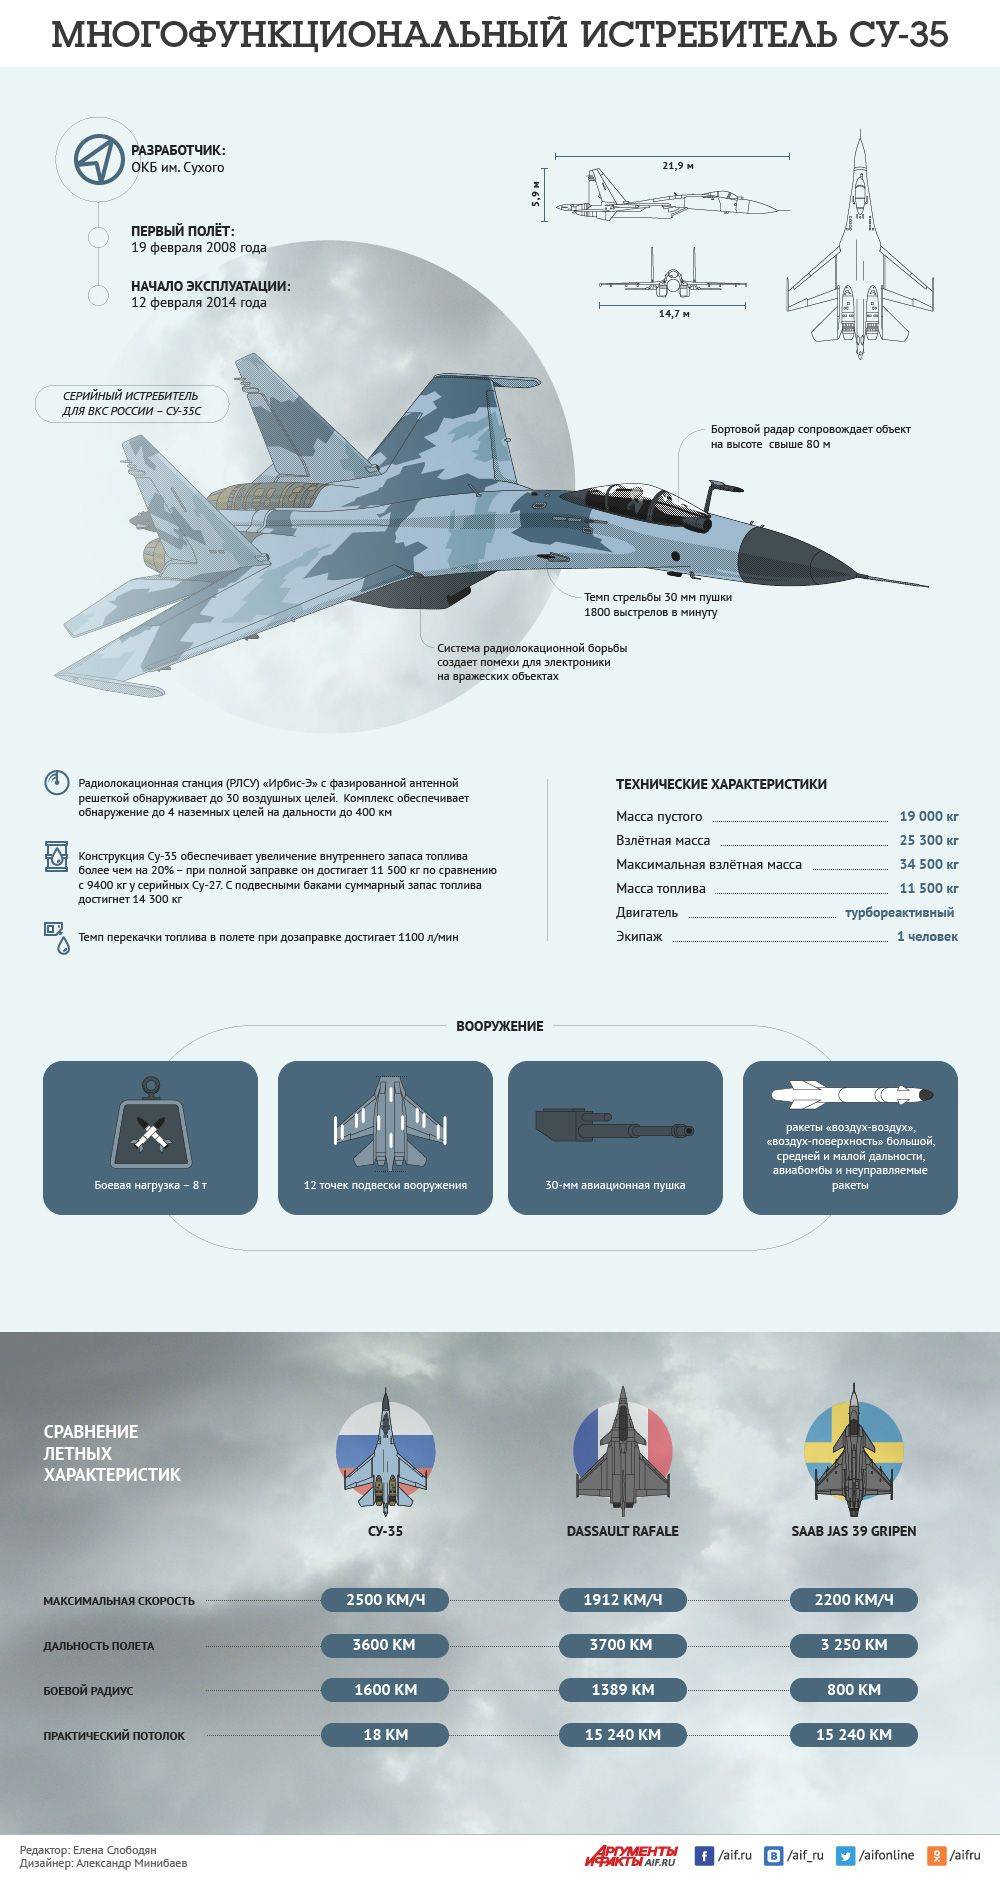 «одна из лучших универсальных машин в мире»: какими преимуществами обладает многофункциональный самолёт су-35